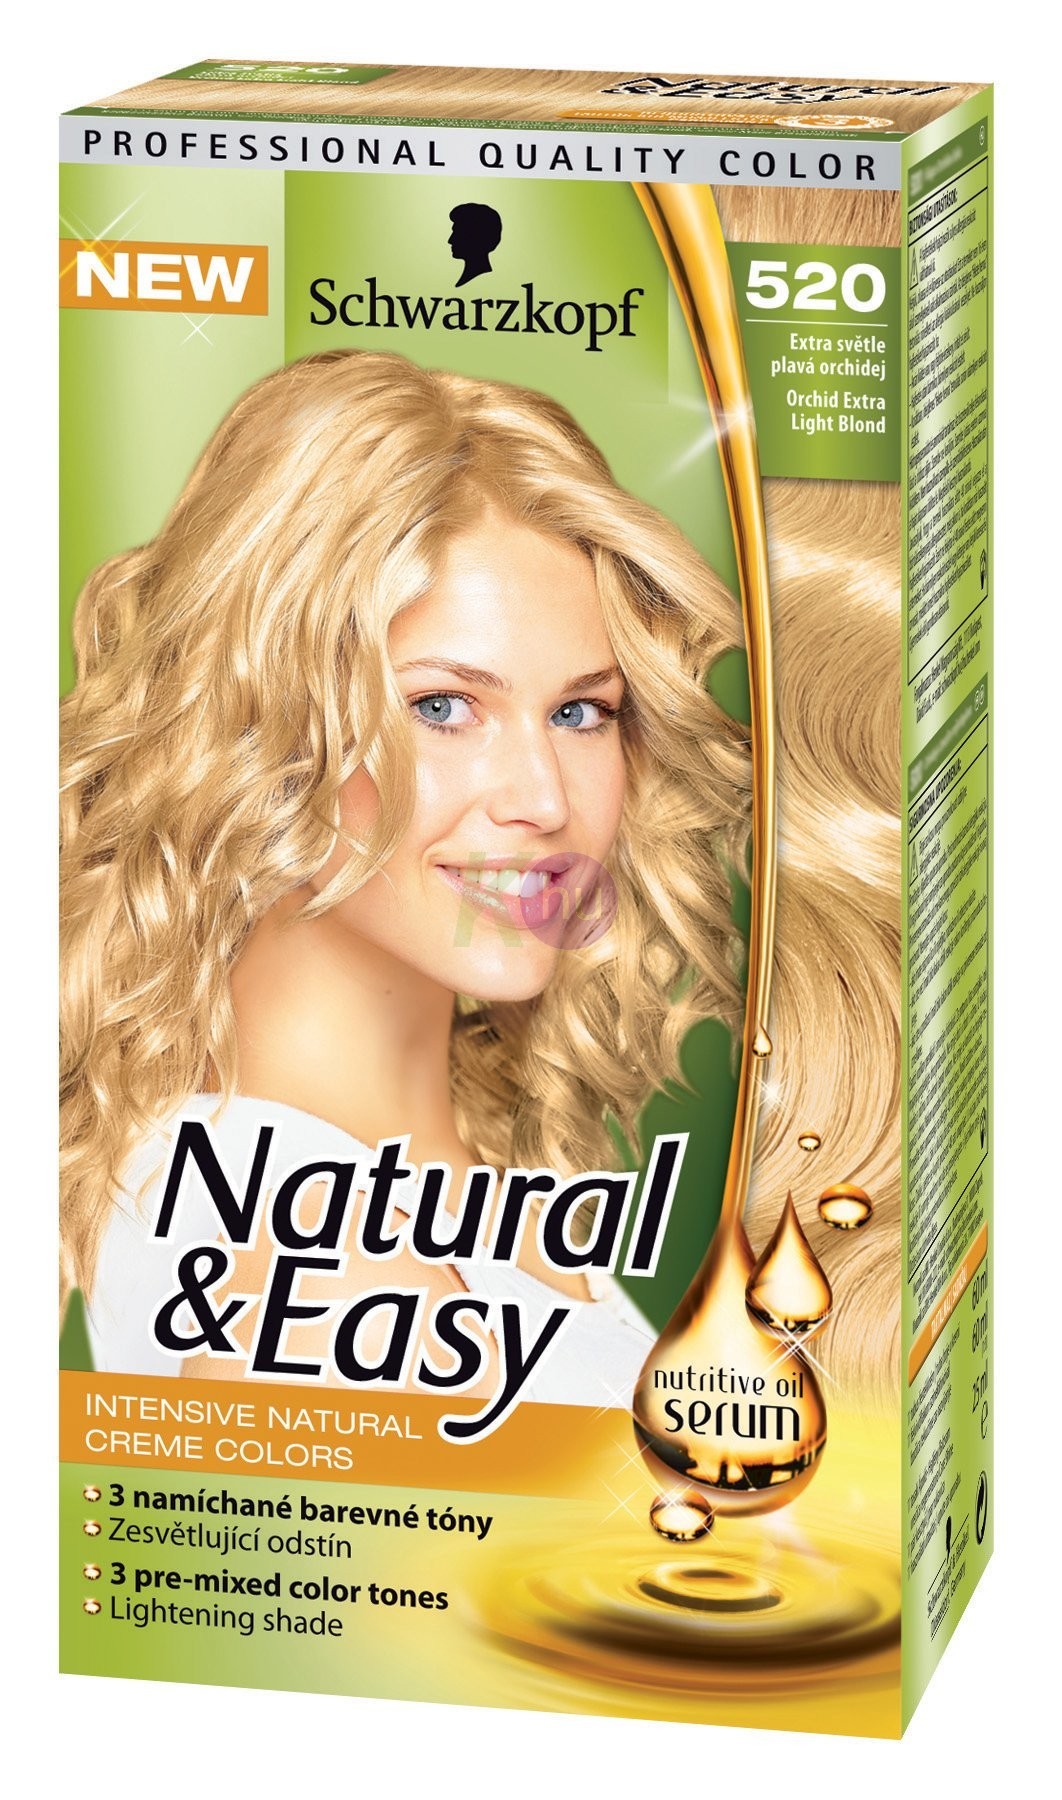 Natural&Easy hajfestek 520 19133900